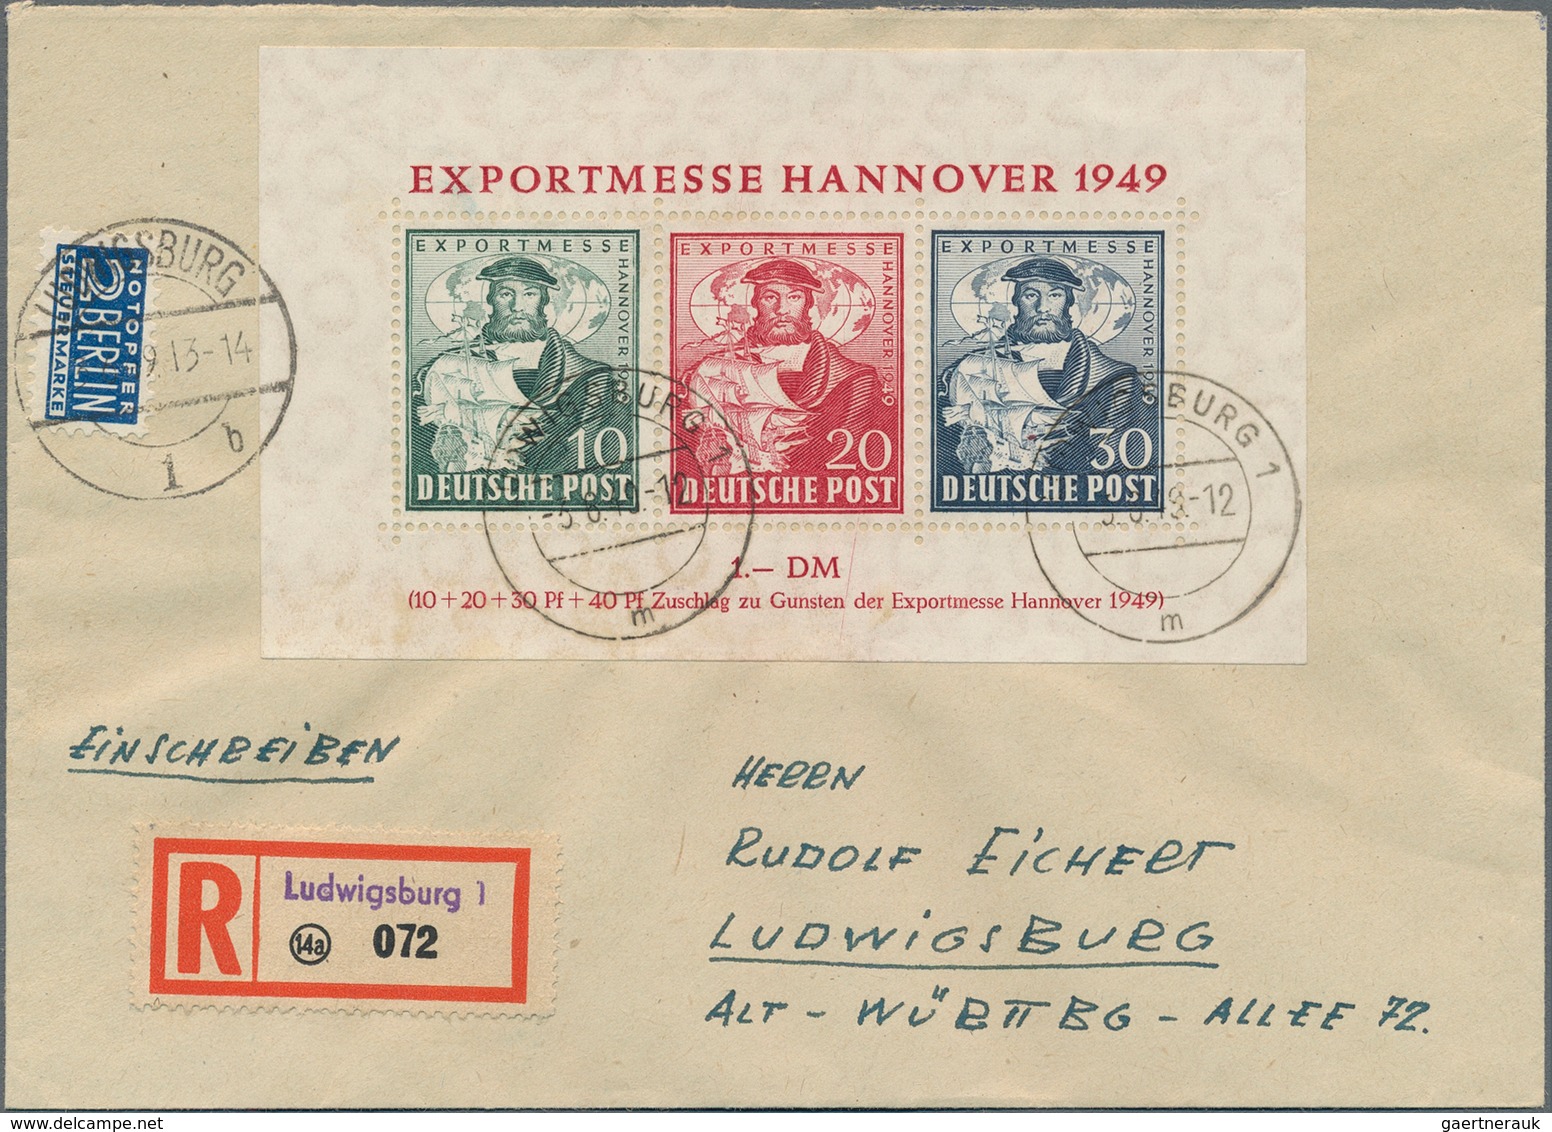 Deutschland nach 1945: 1945 ab, reichhaltiger Sammlungsbestand mit über 600 Belegen, dabei Post aus